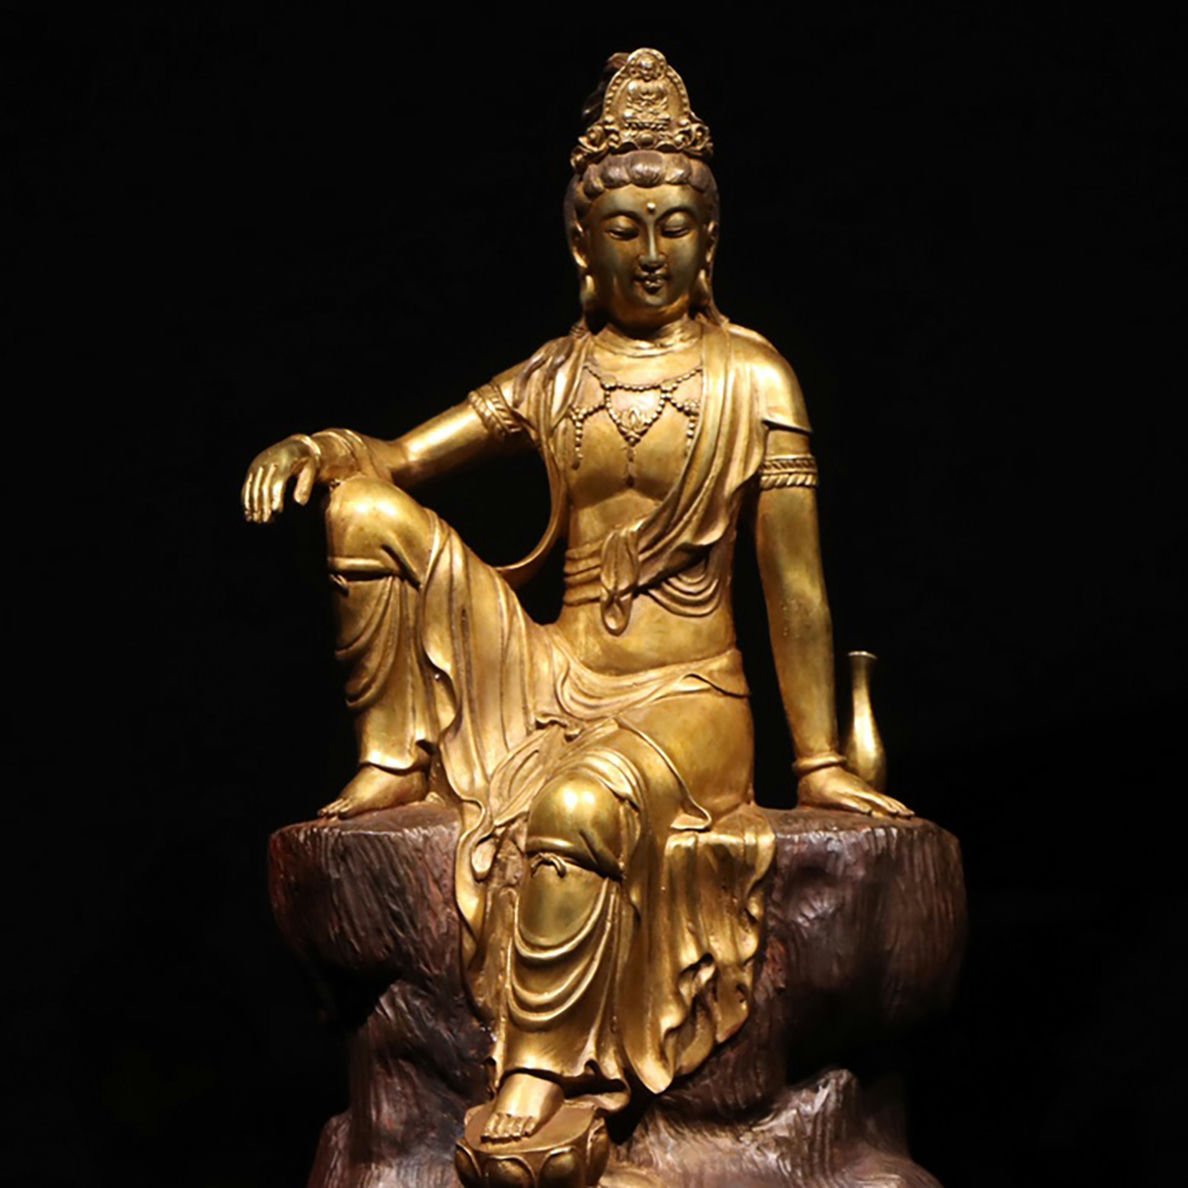 ◆羽彰・古美術◆A136明時代 自在観音 銅塗金・仏像・ 超絶技巧 仏教古美術・細密造 寺院収蔵品